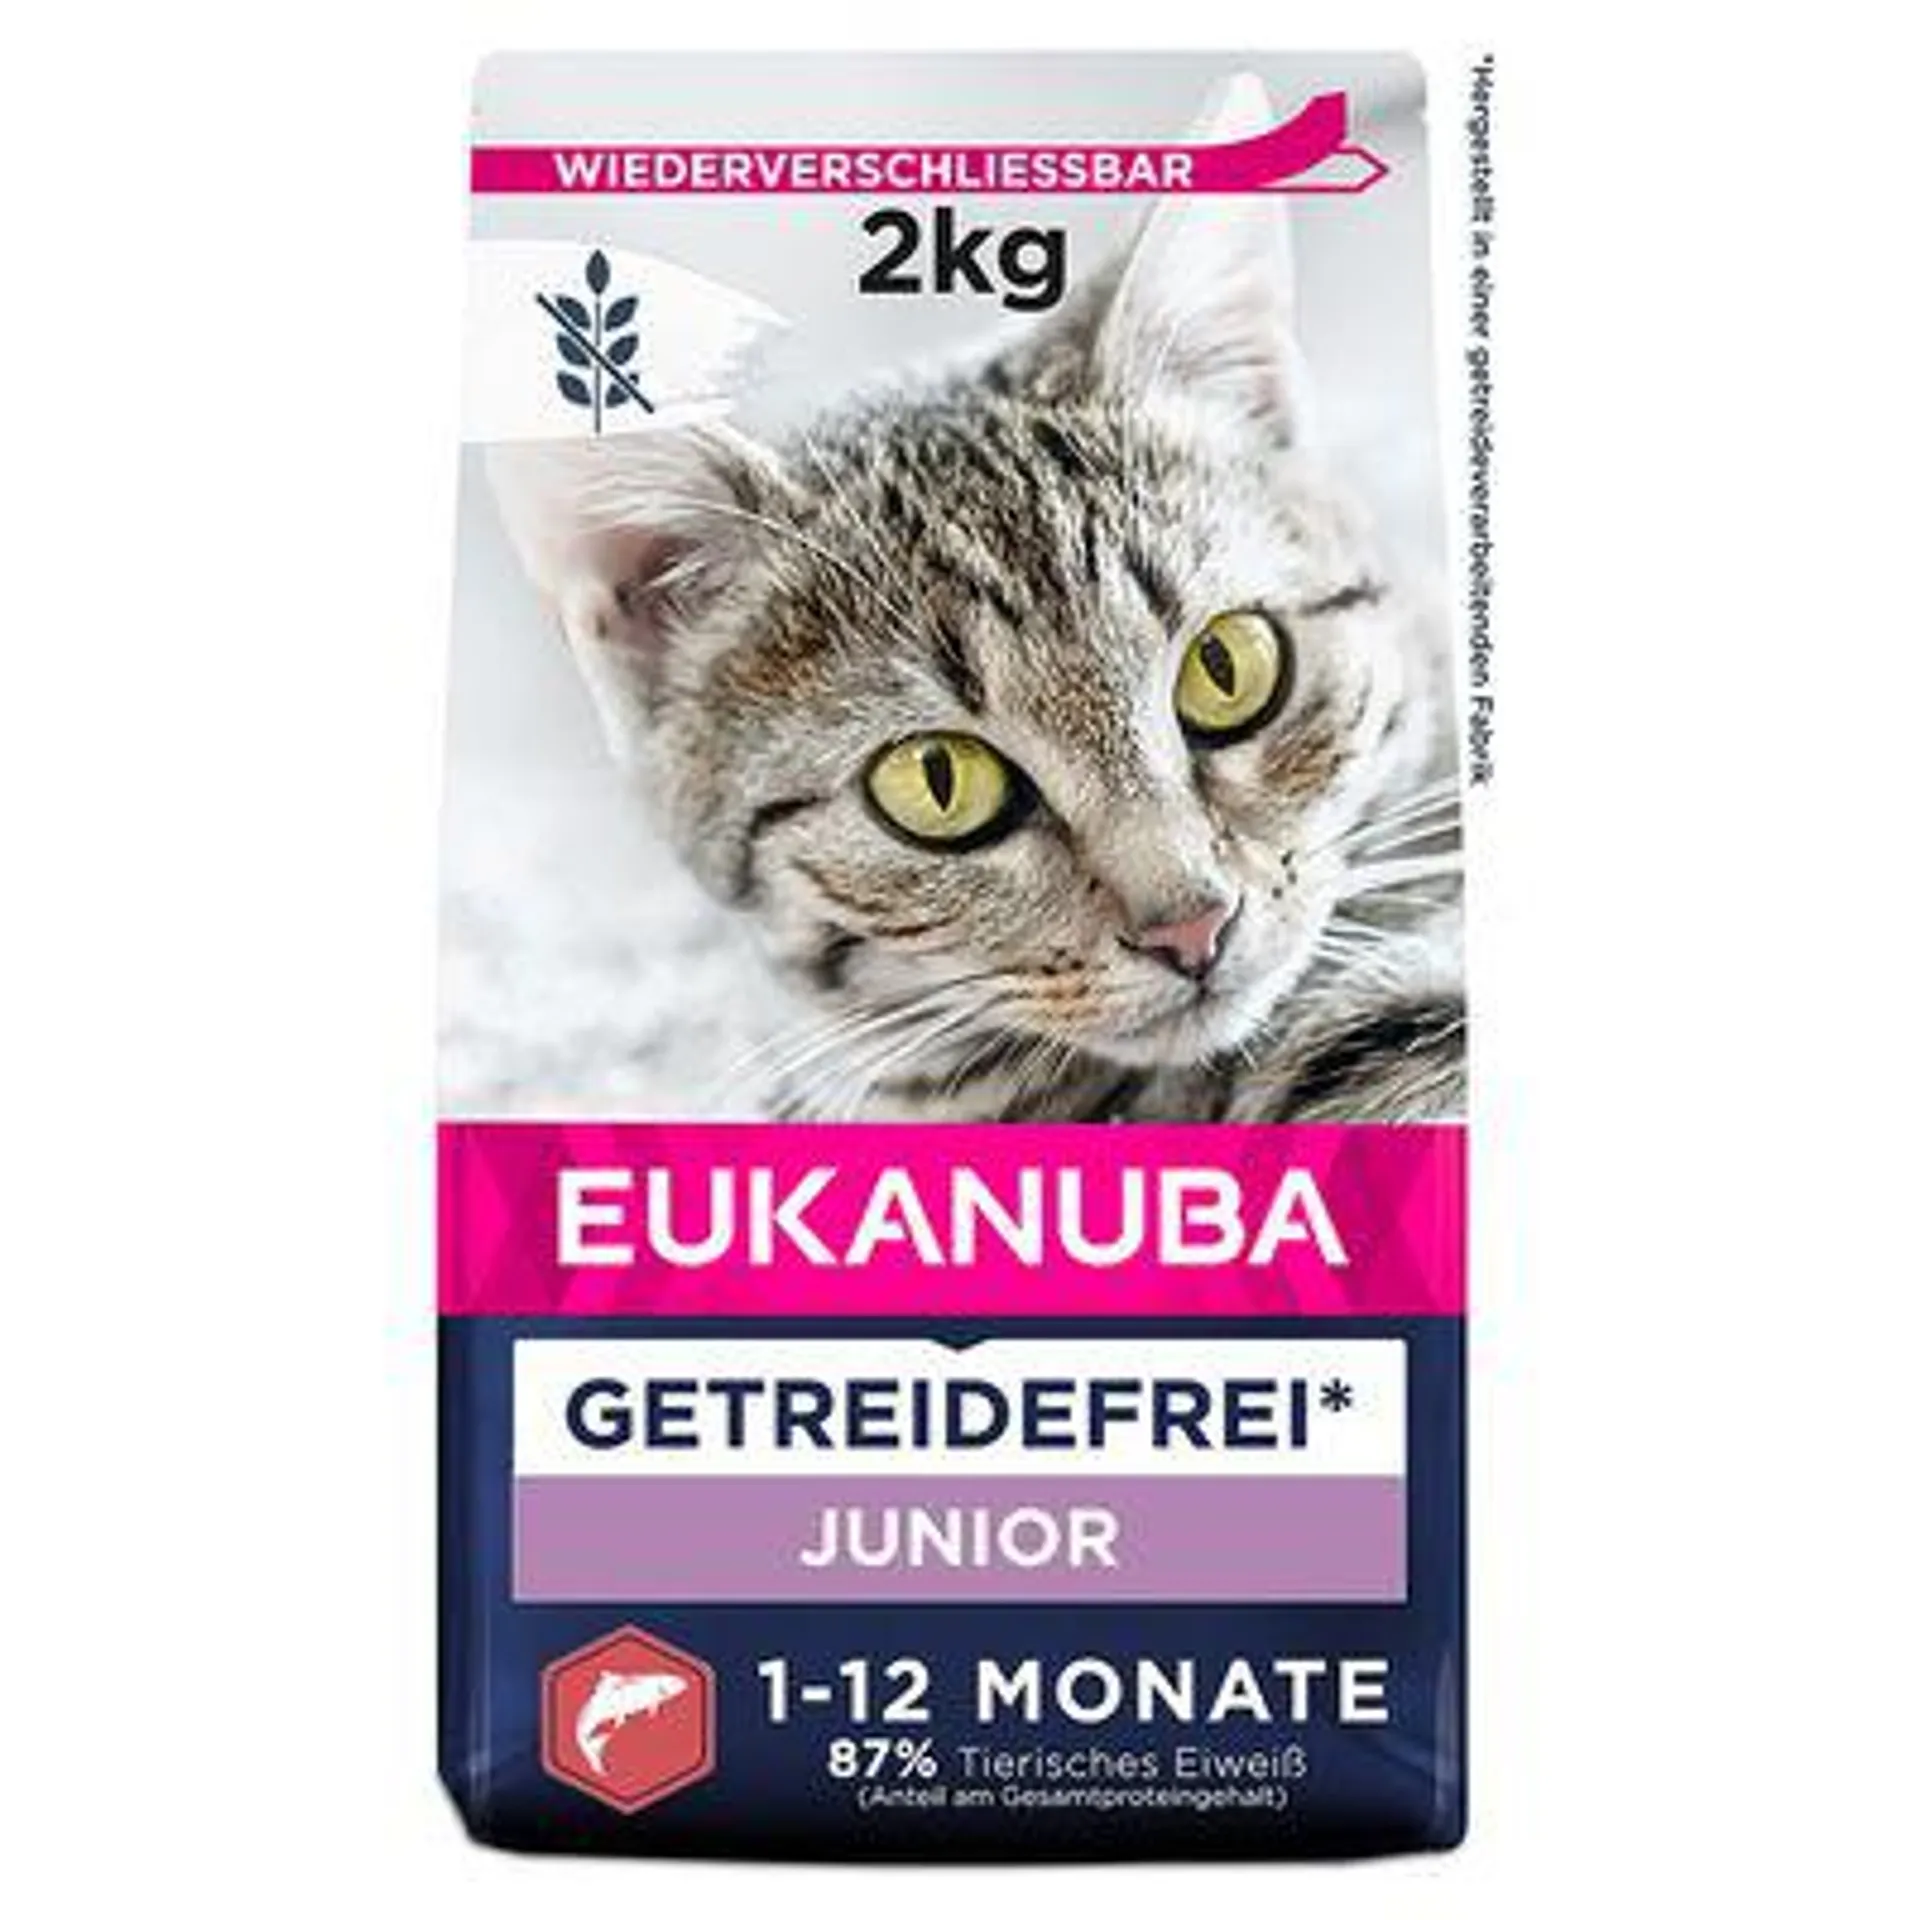 2kg Eukanuba Grain-Free Dry Cat Food - 15% Off! *